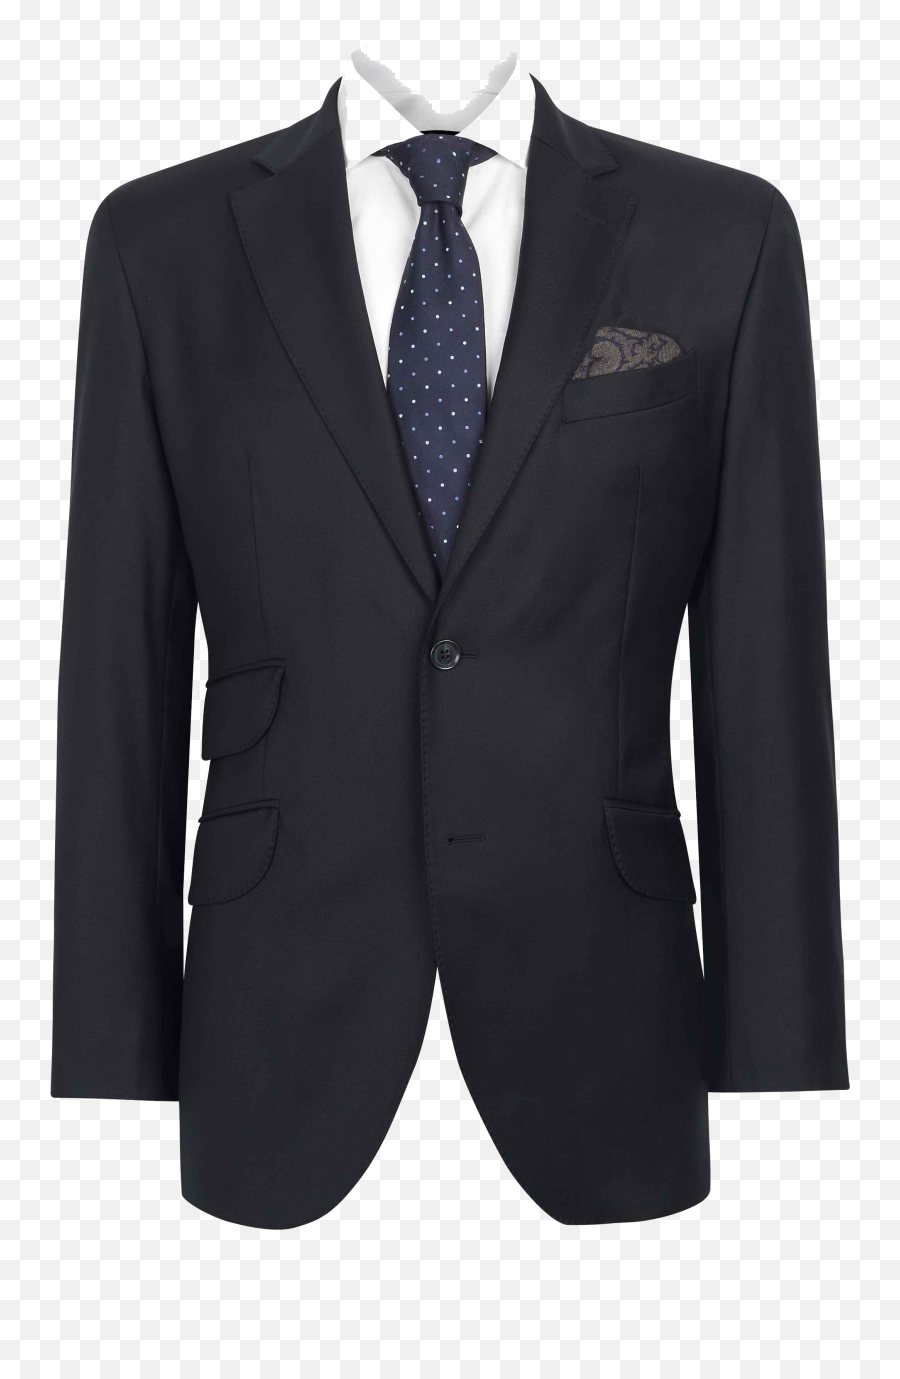 Download Suit Image Hq Png Image - Transparent Background Suit Clipart Emoji,Suit Png